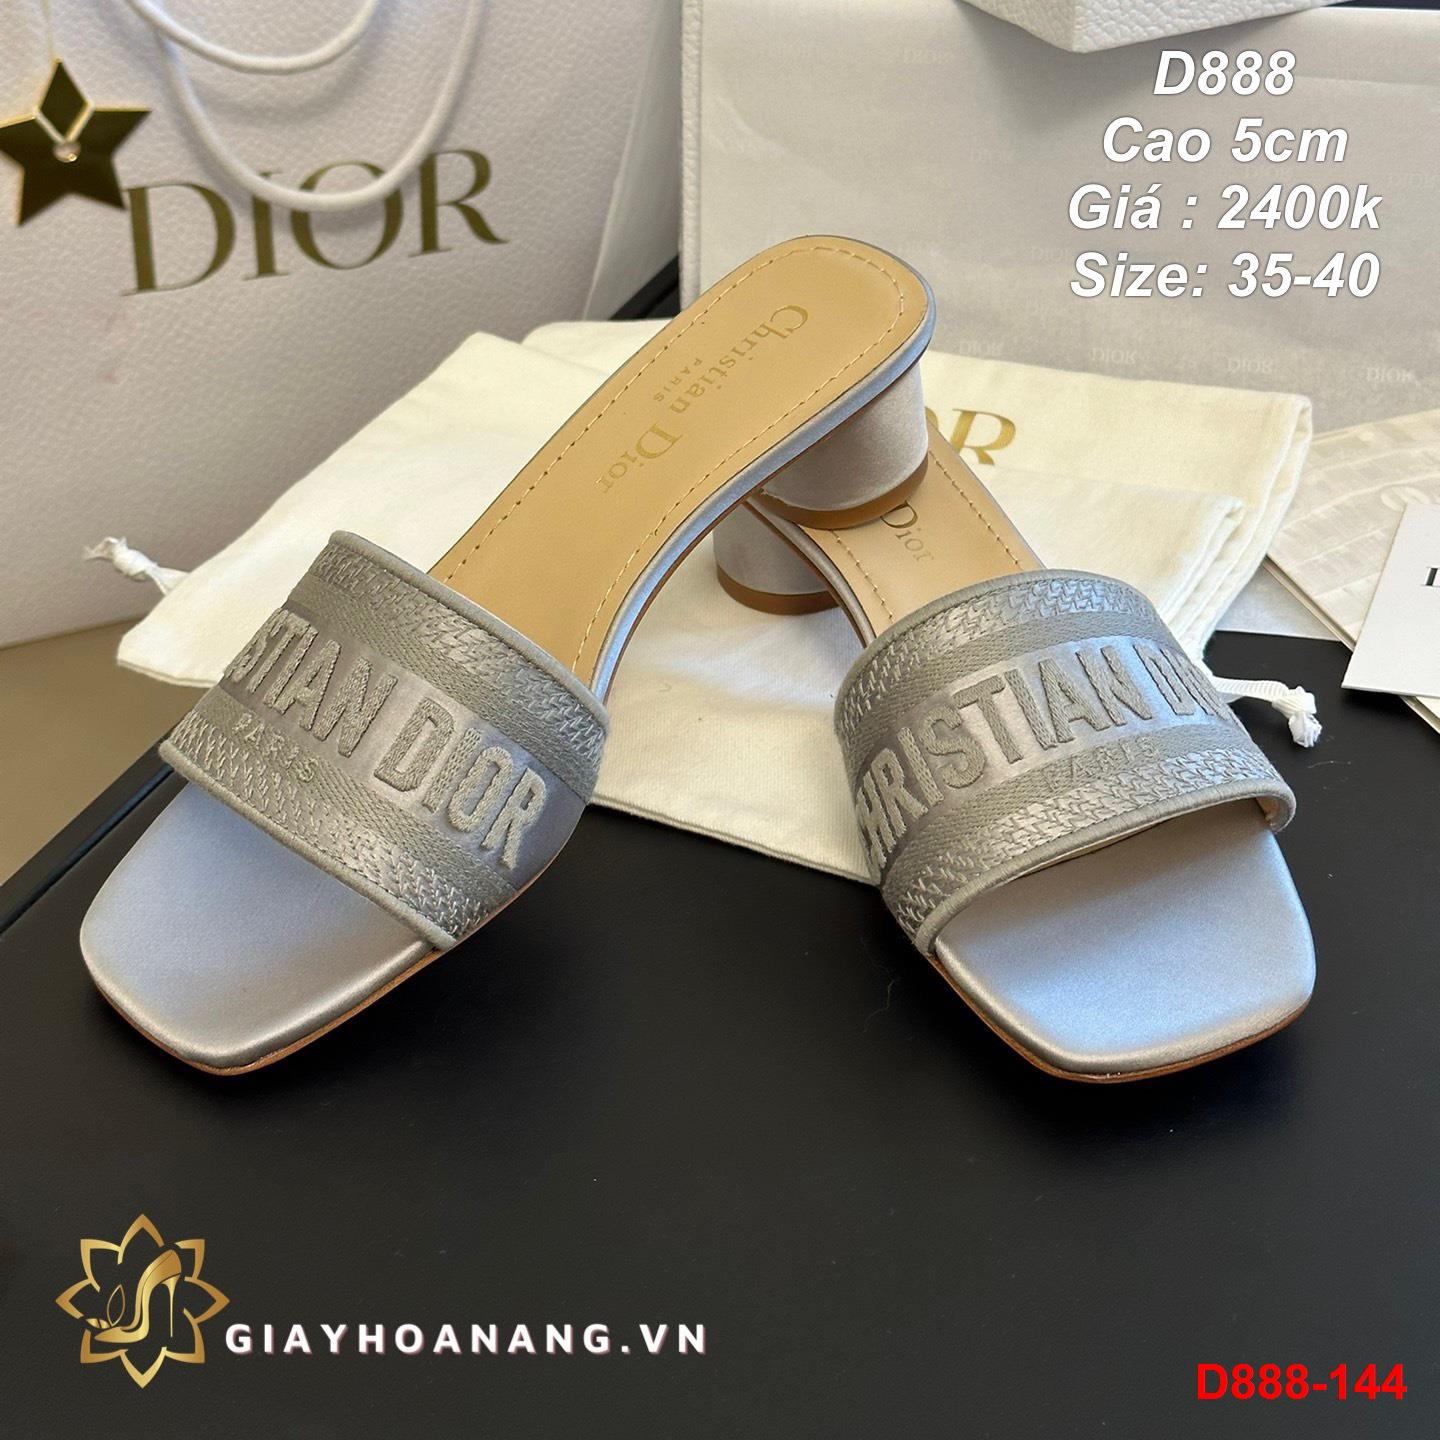 D888-144 Dior dép cao 5cm siêu cấp